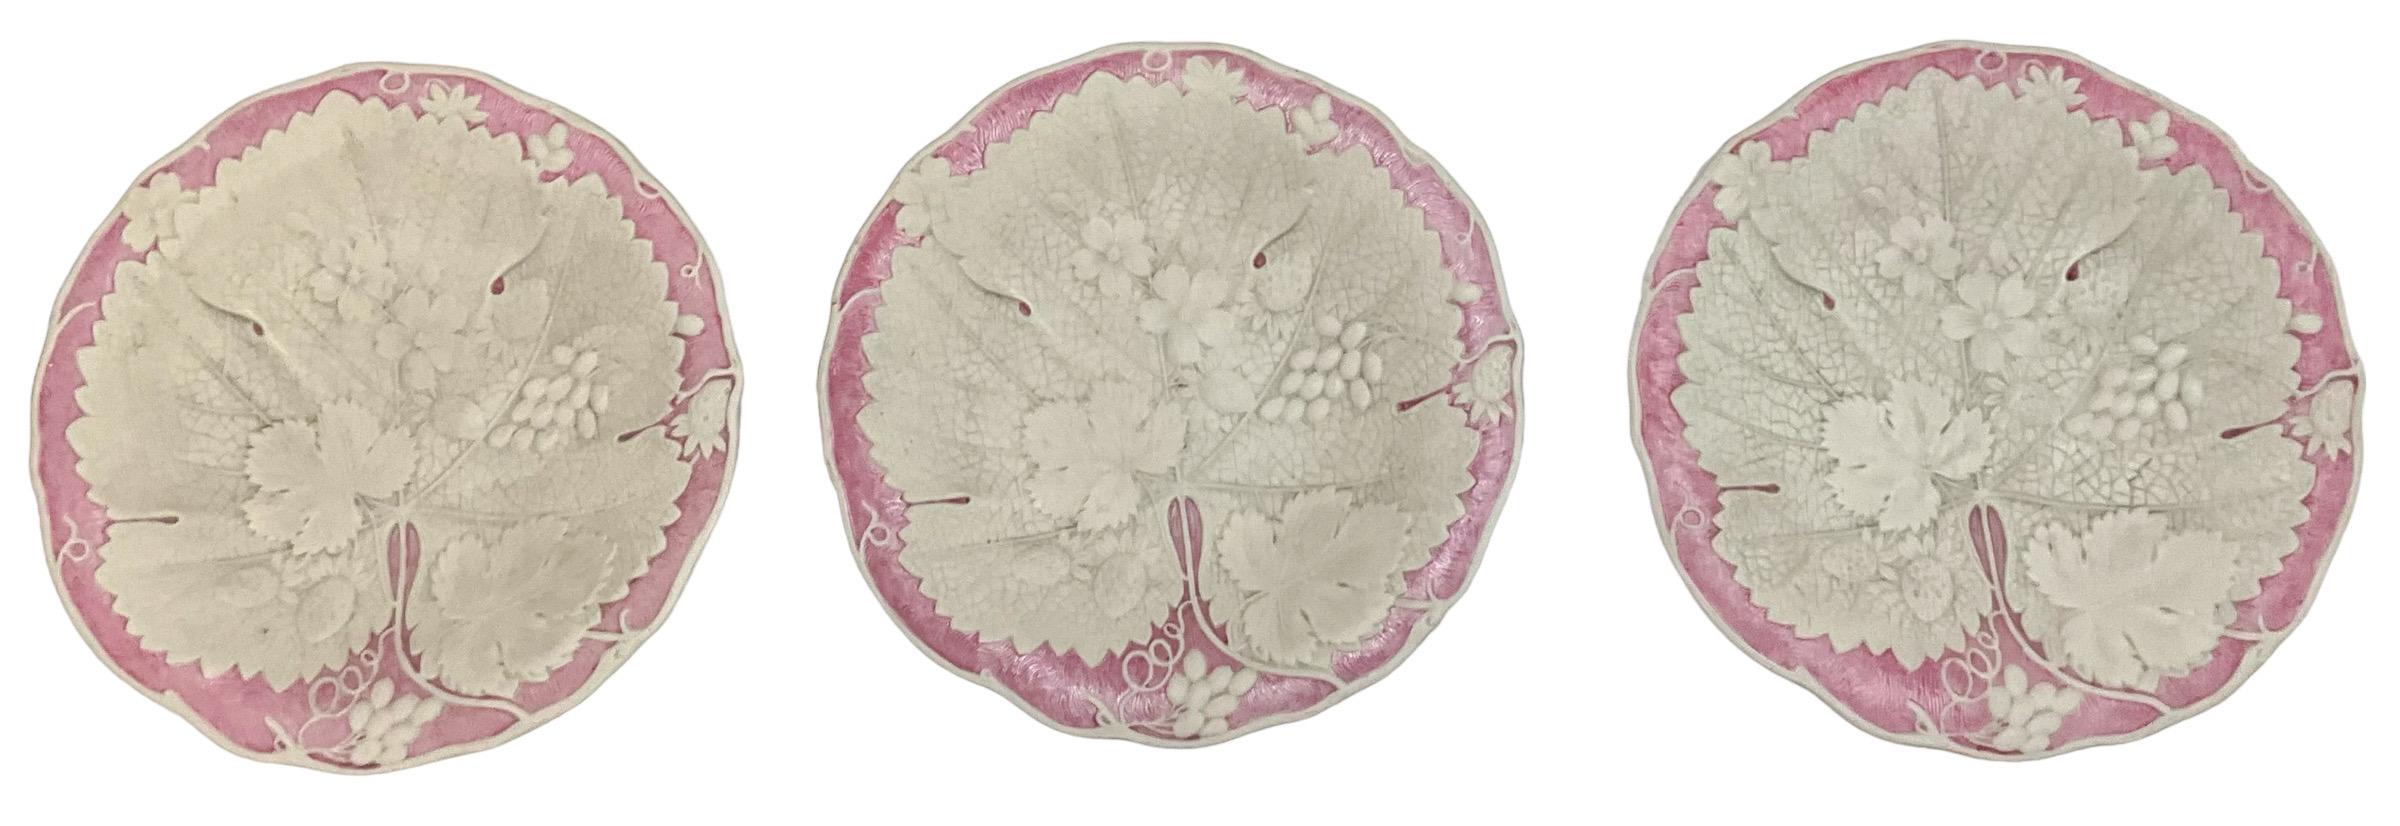 European English Wedgwood Style Basalt Glaze Pink & White Botanical / Begonia Plates -S/6